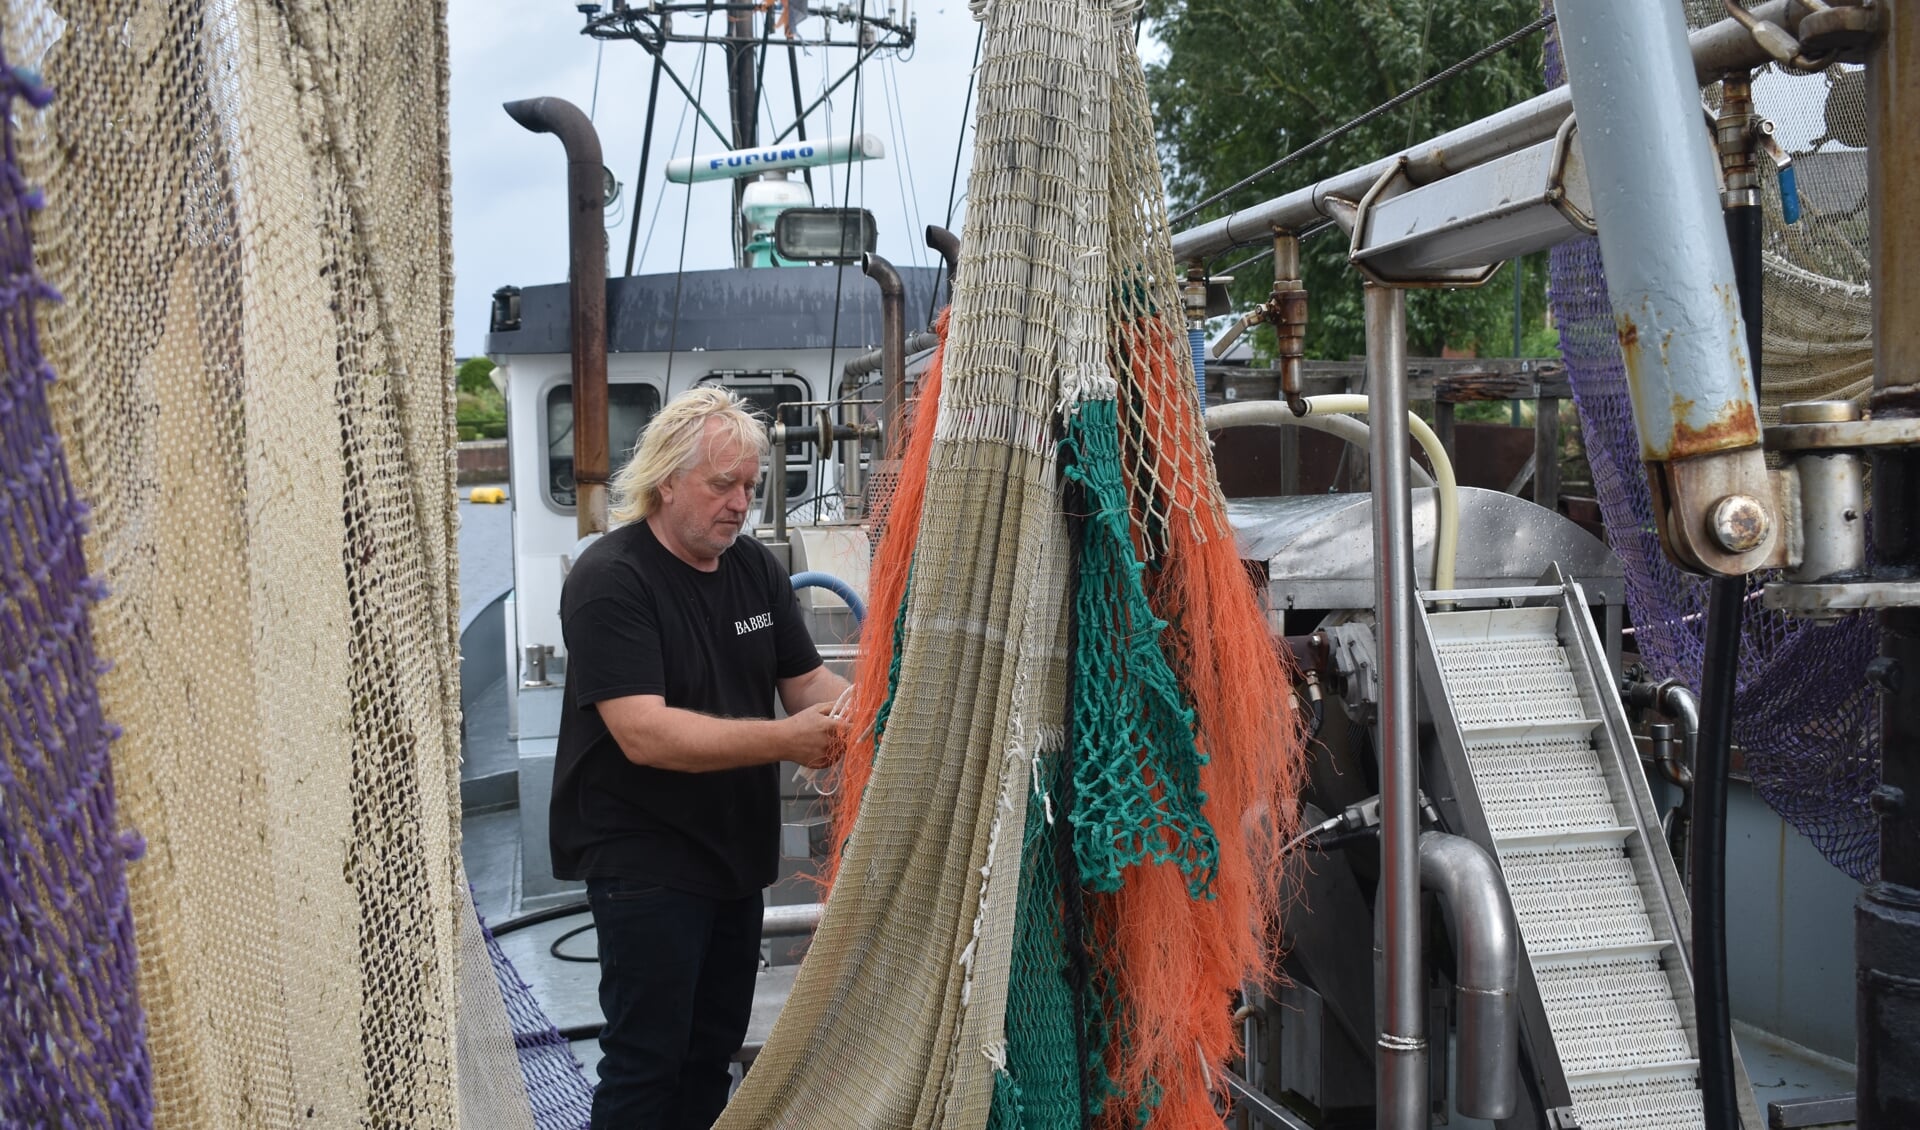 Garnalenvisser Jan de Vries repareert een net op zijn kotter.